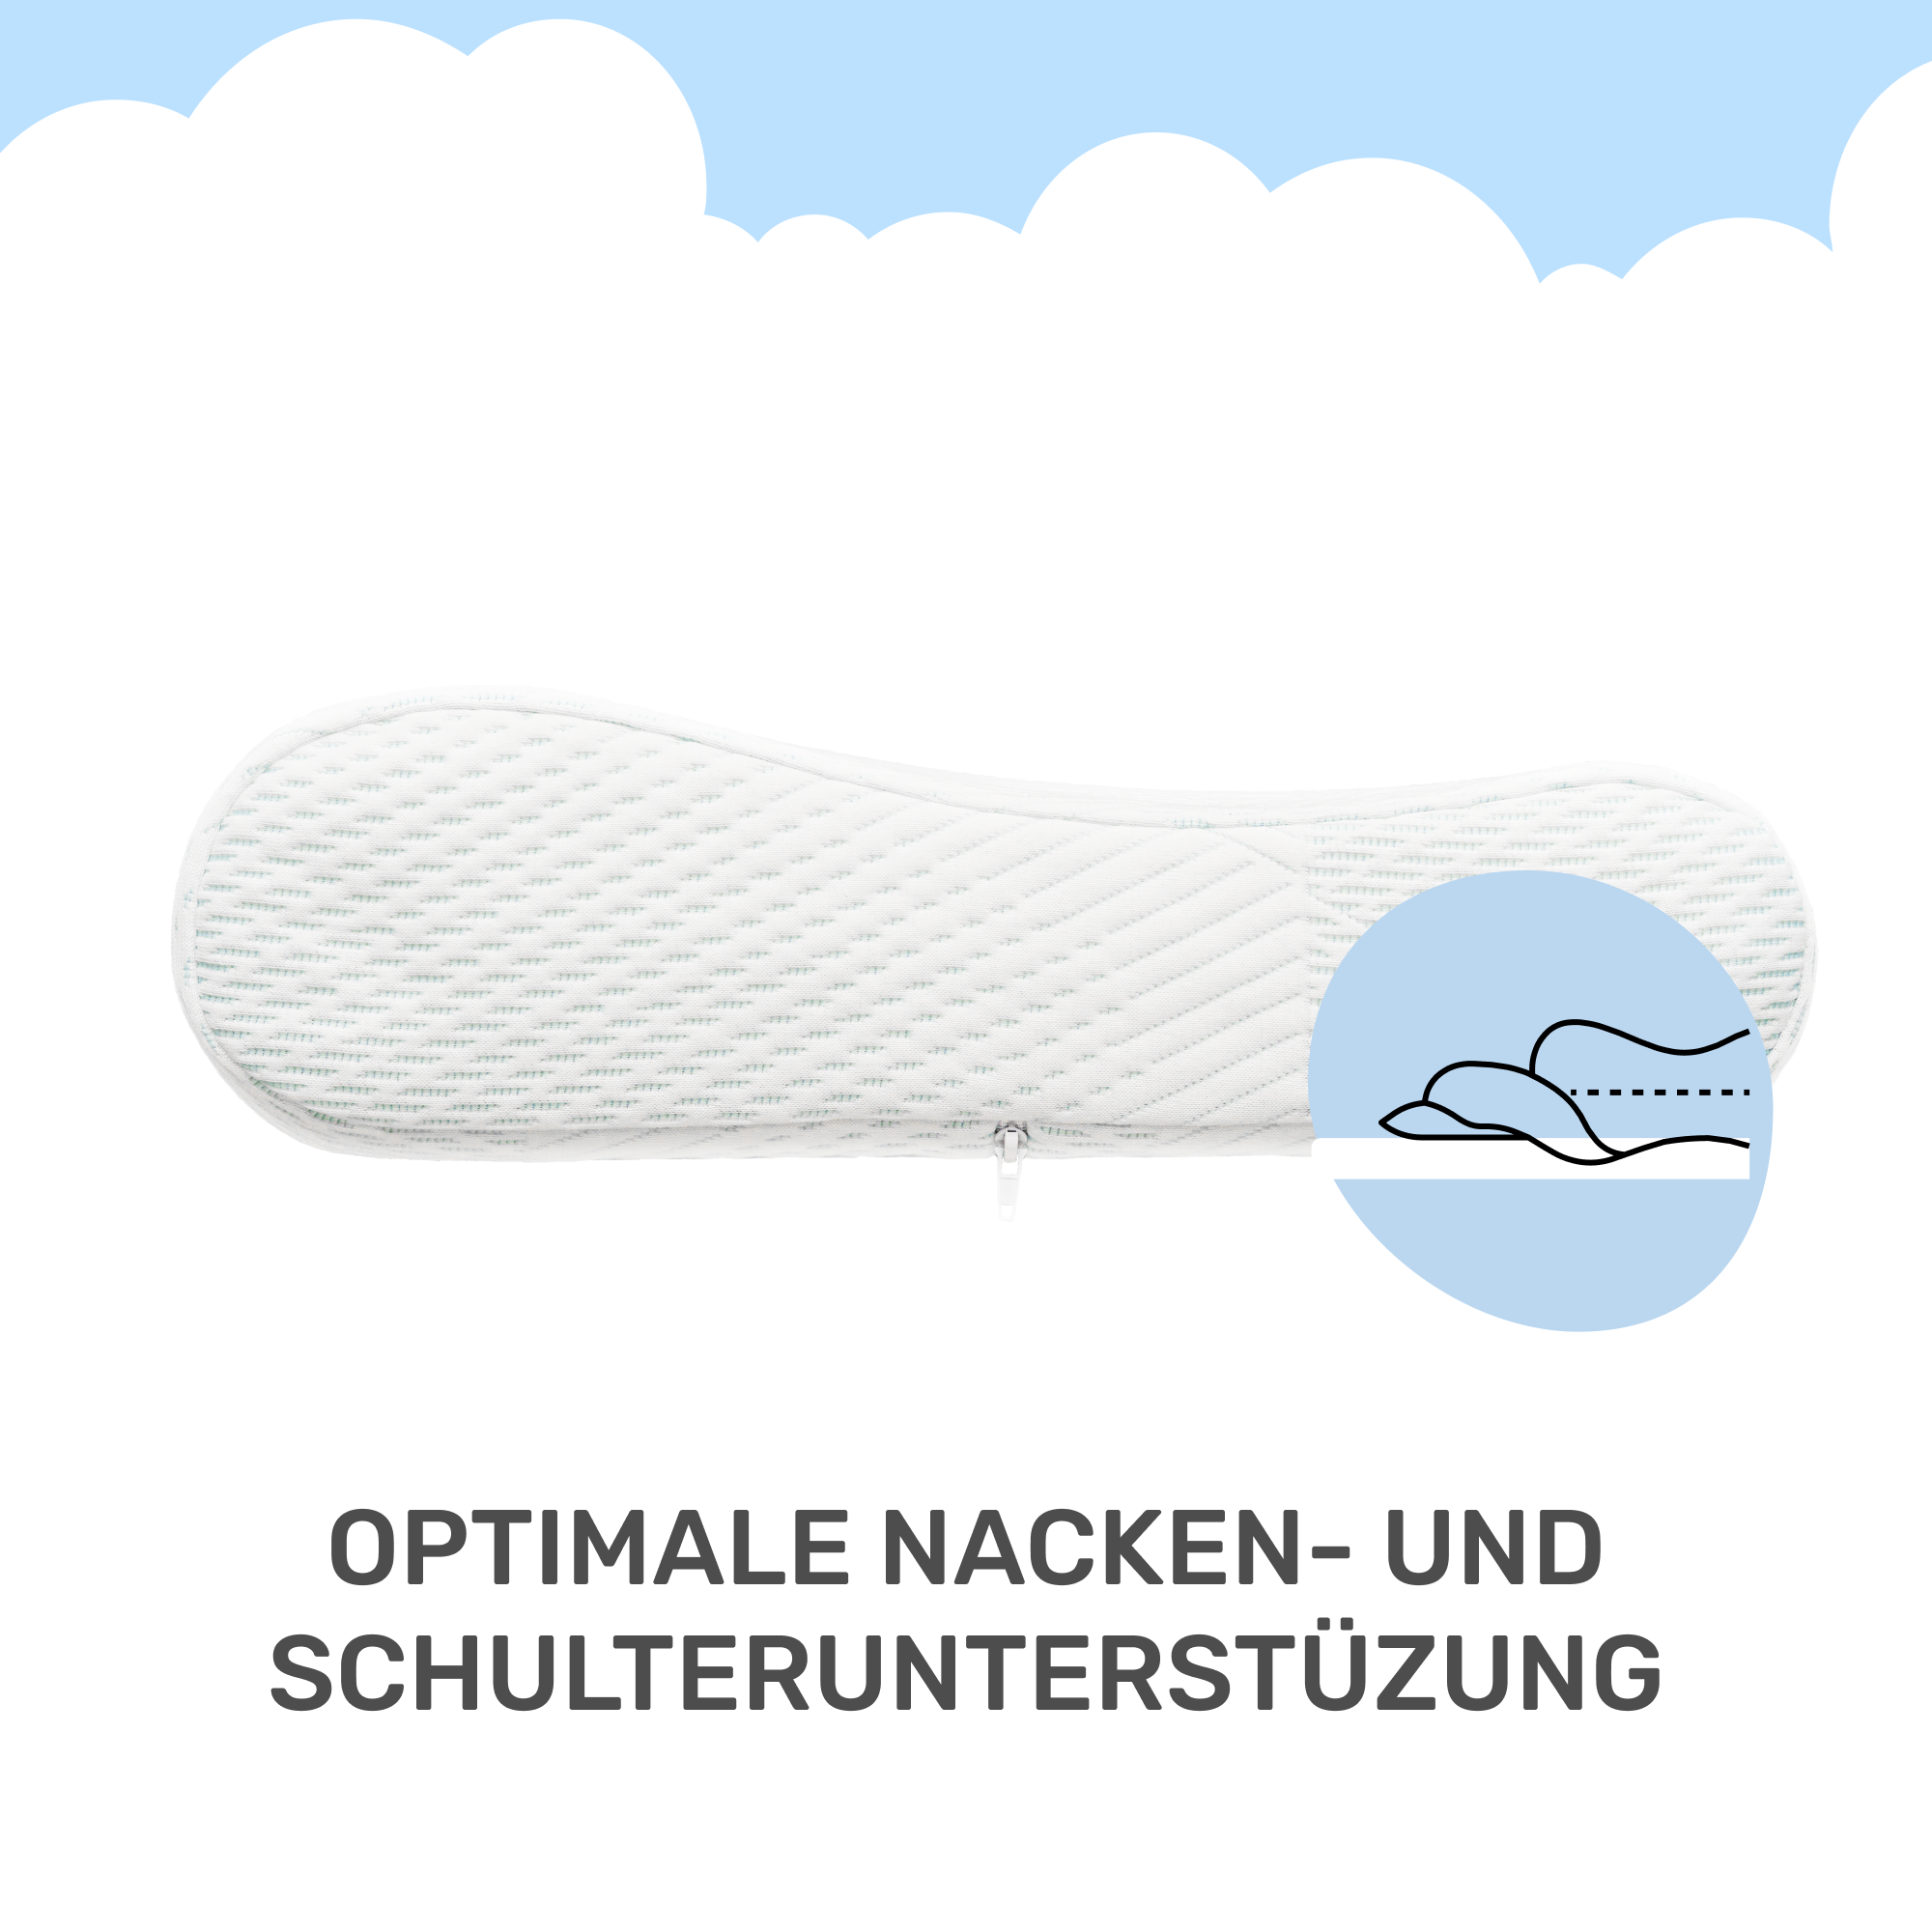 Dailydream Memory Foam Kissen, ergonomisches Nackenstützkissen mit Anti-Virus Bezug, 60x40x9/11 cm, Weiß